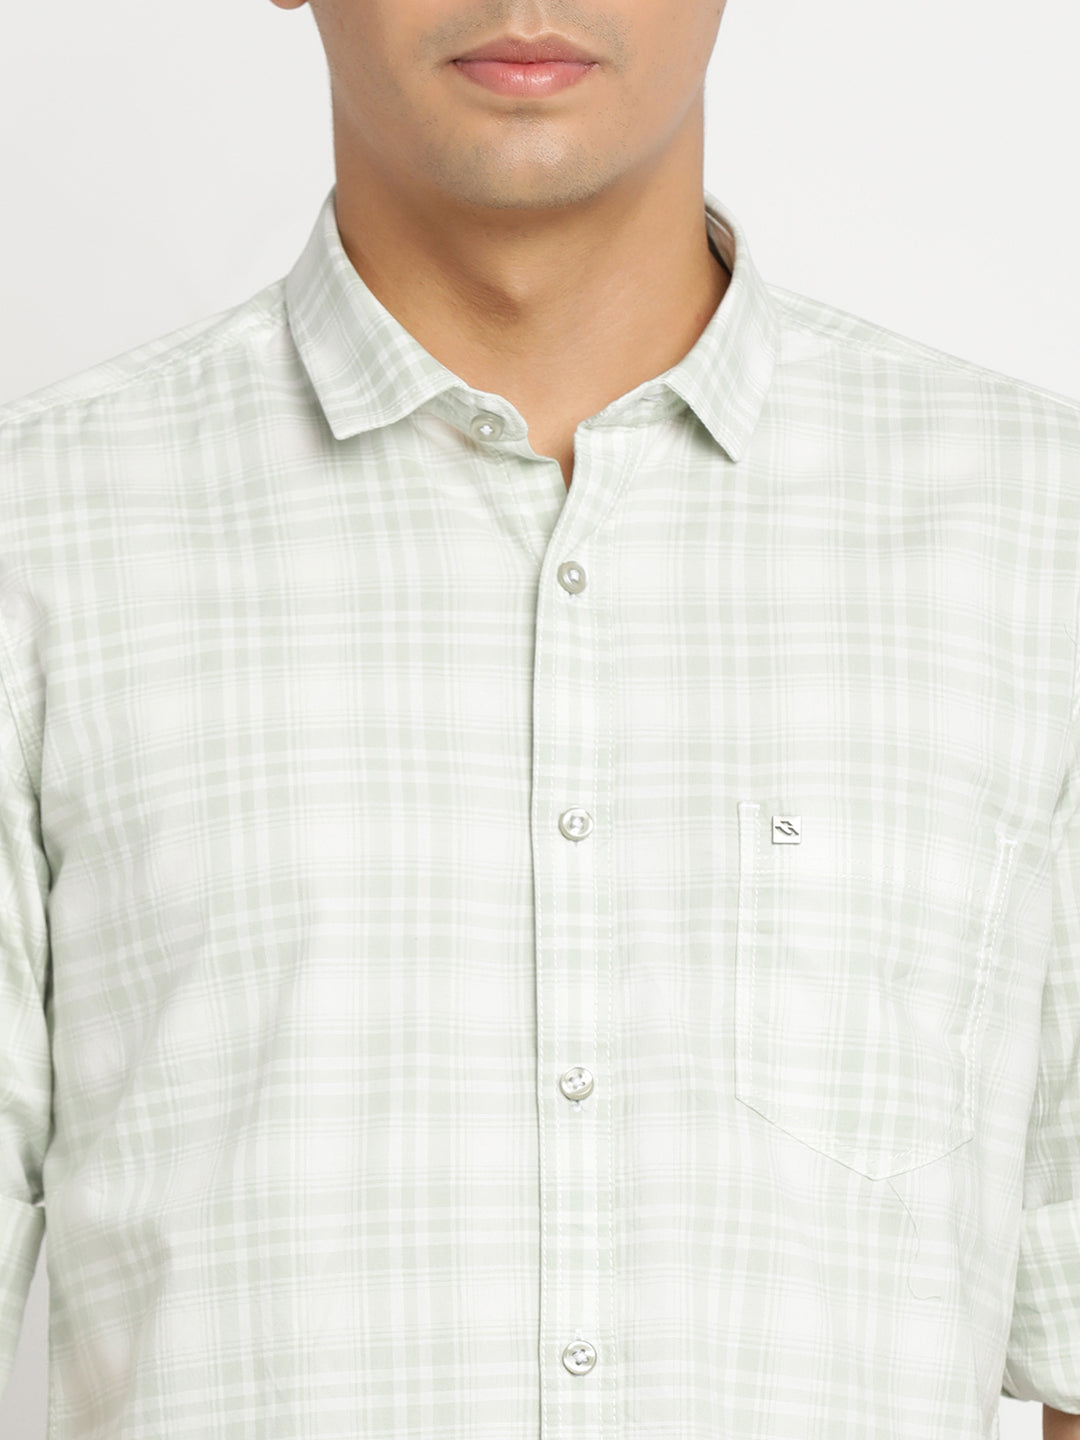 Green Checkerd Shirt